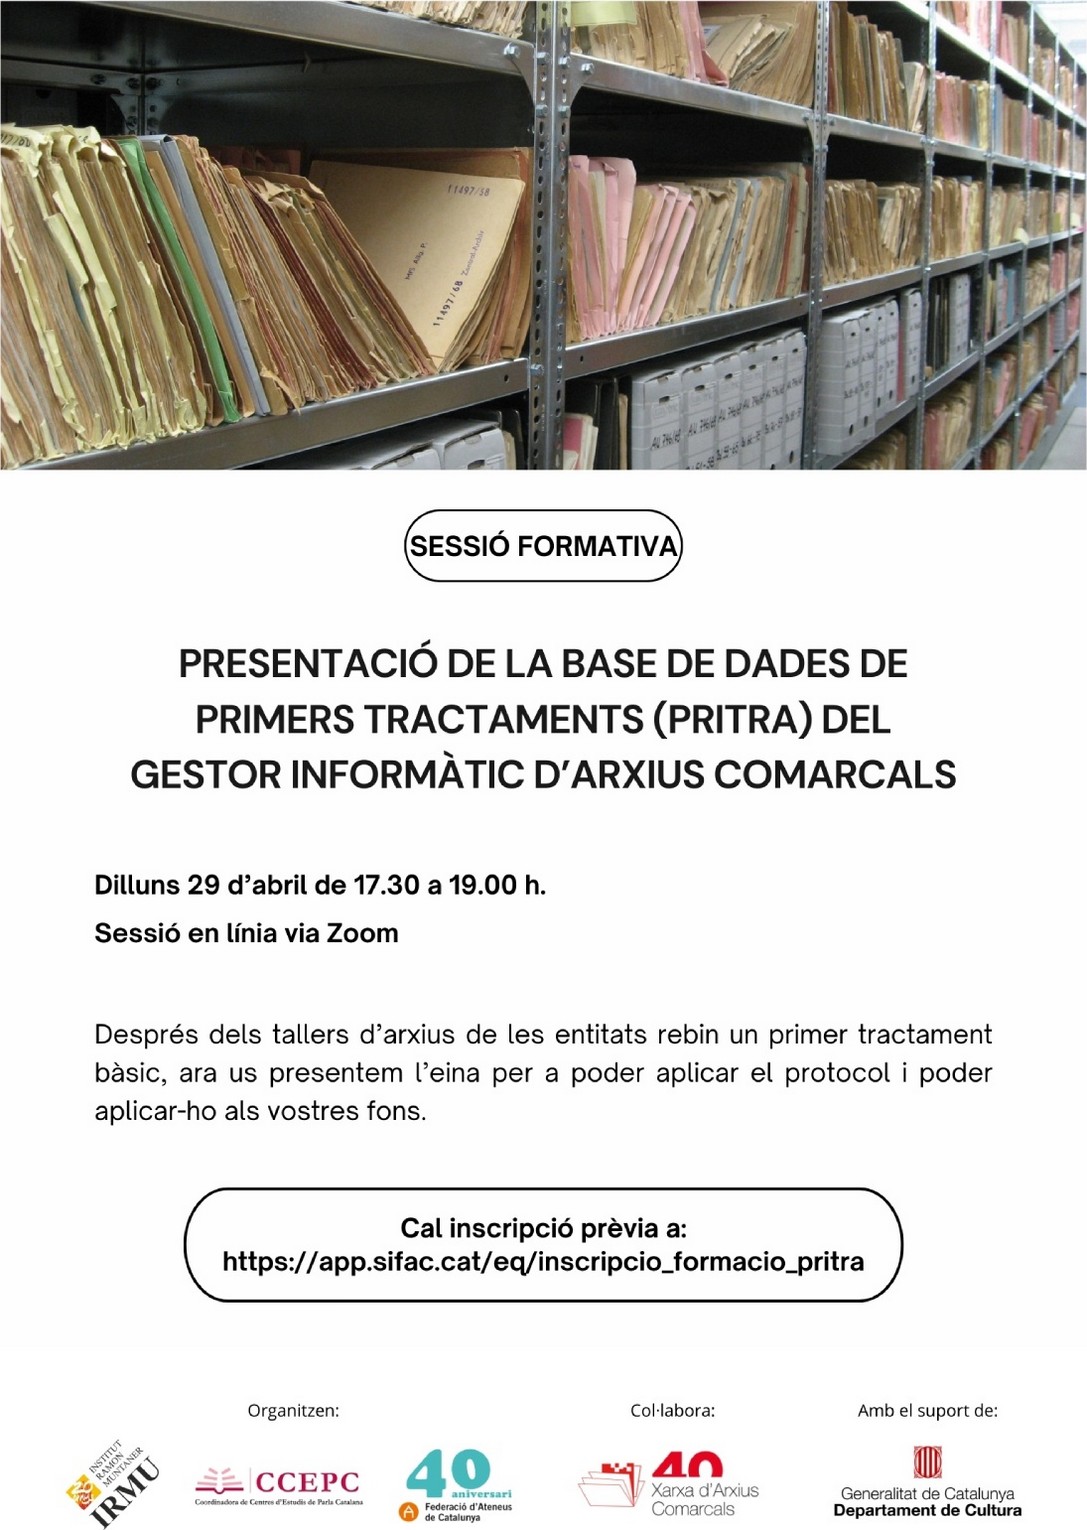 La Xarxa d’Arxius Comarcals proporcionarà a centres d’estudis de tota Catalunya eines per organitzar i descriure els seus arxius